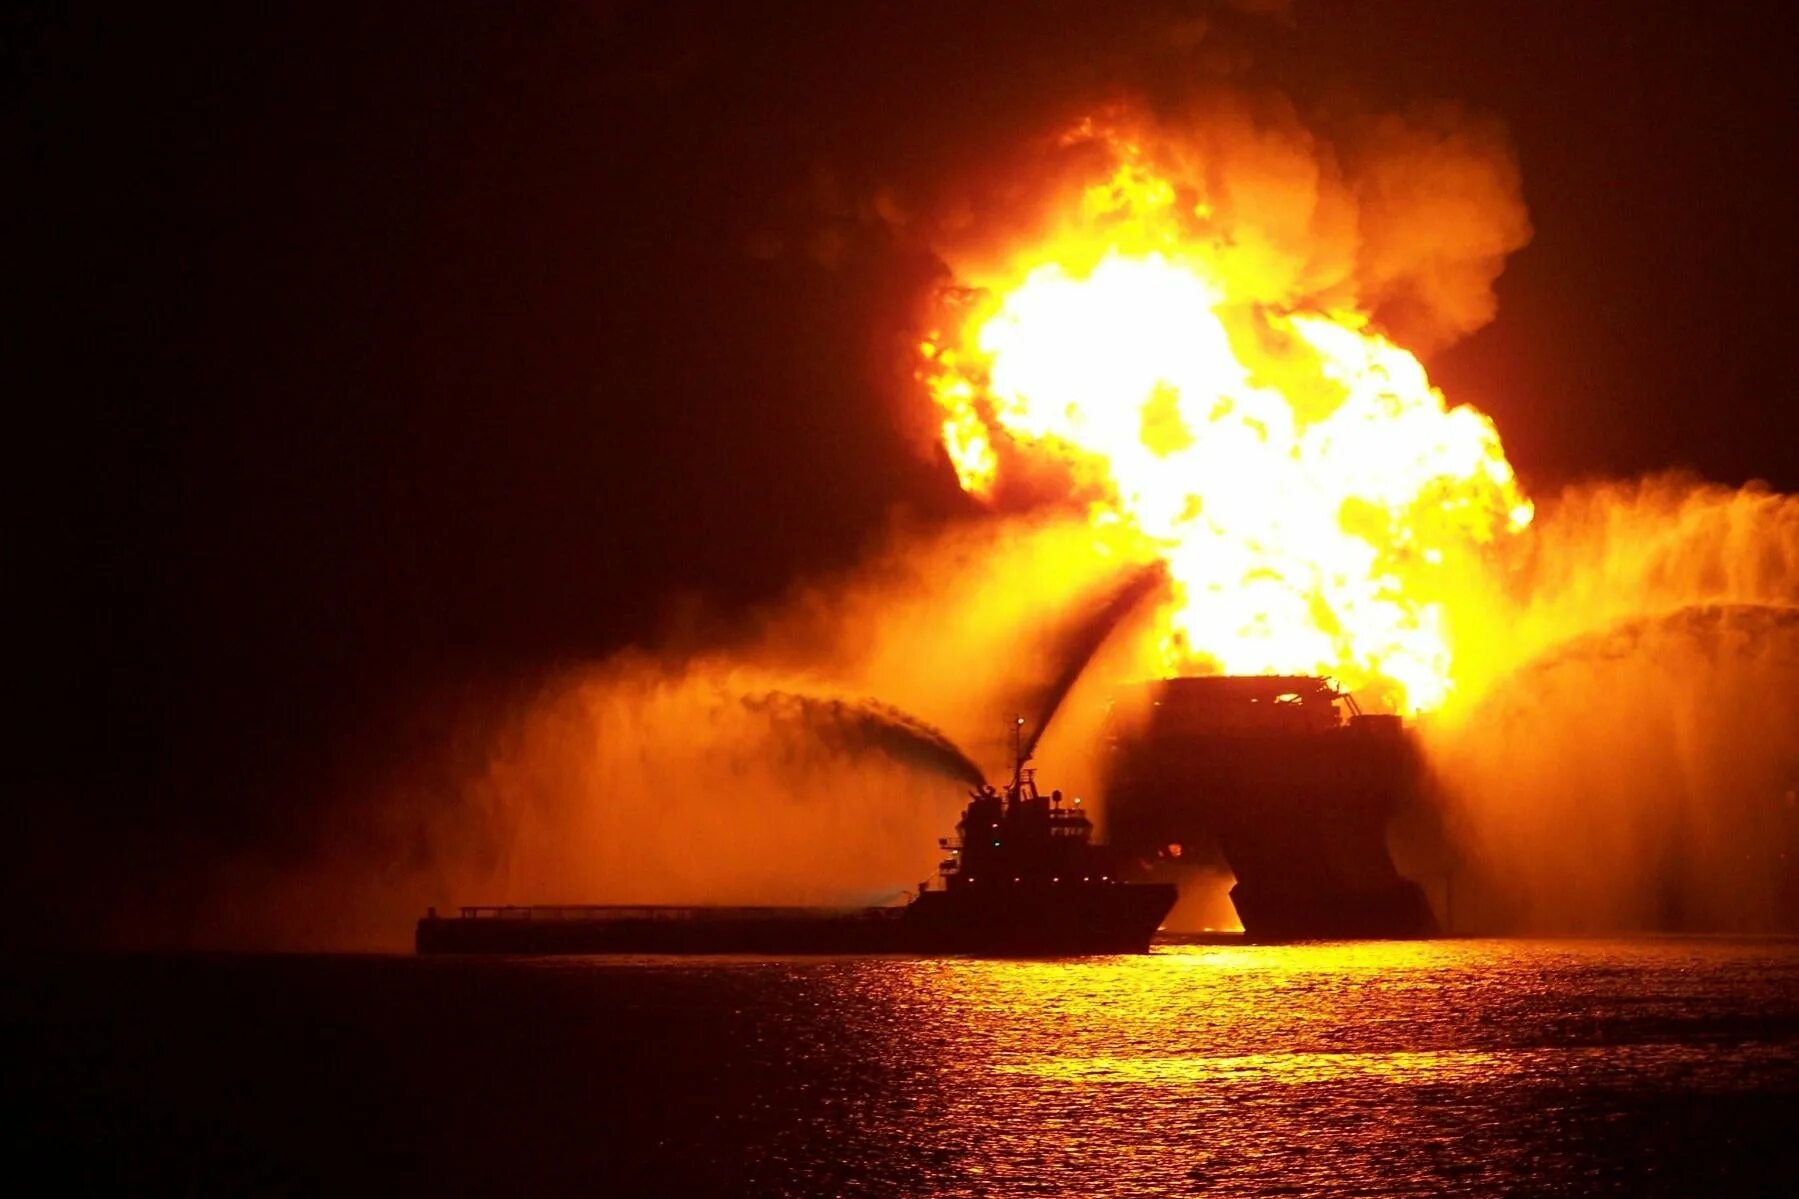 30 апреля 2010. Взрыв нефтяной платформы Deepwater Horizon. Взрыв нефтяной платформы в мексиканском заливе 20 апреля 2010. Бритиш Петролеум авария в мексиканском заливе. Взрыв нефтяной платформы Horizon Oil (20 апреля 2010 года).